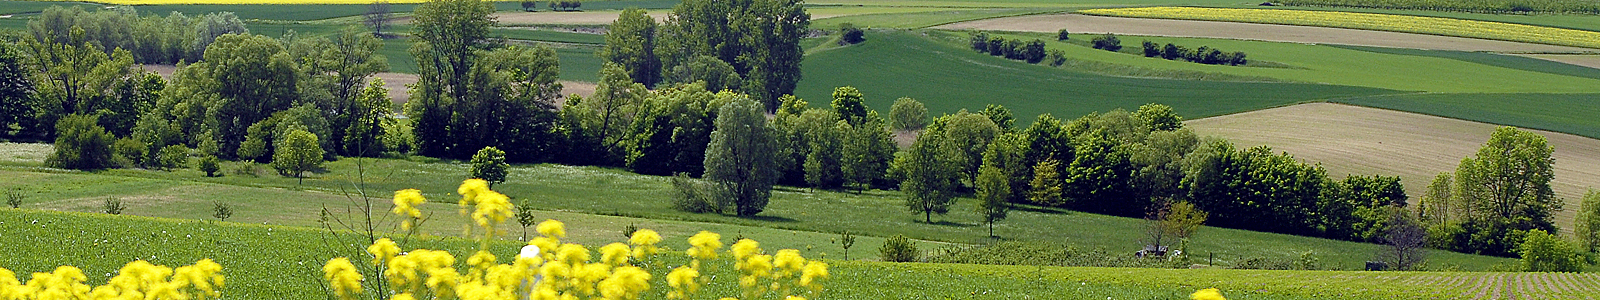 Landschaft mit Bäumen, Feldern und Wiesen ©DLR